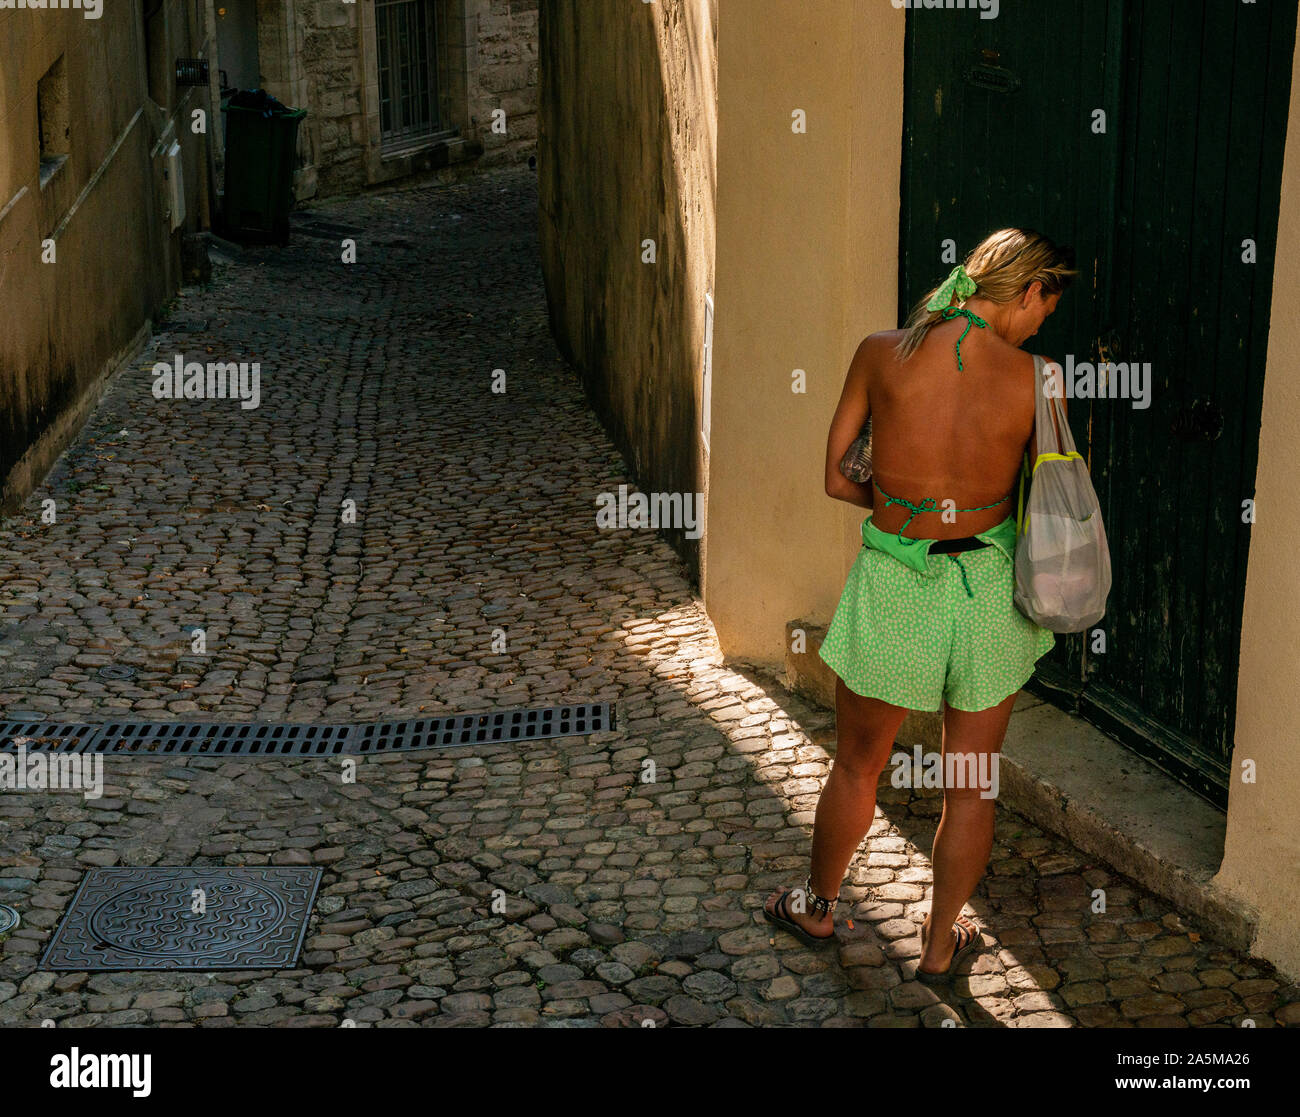 Woman exploring back lane of town, Avignon, Provence, France Stock Photo